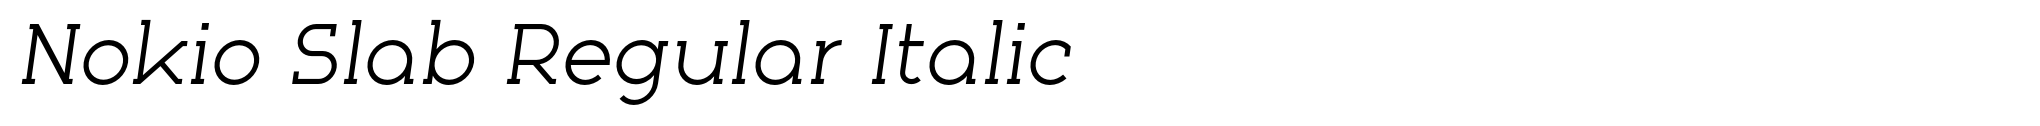 Nokio Slab Regular Italic image